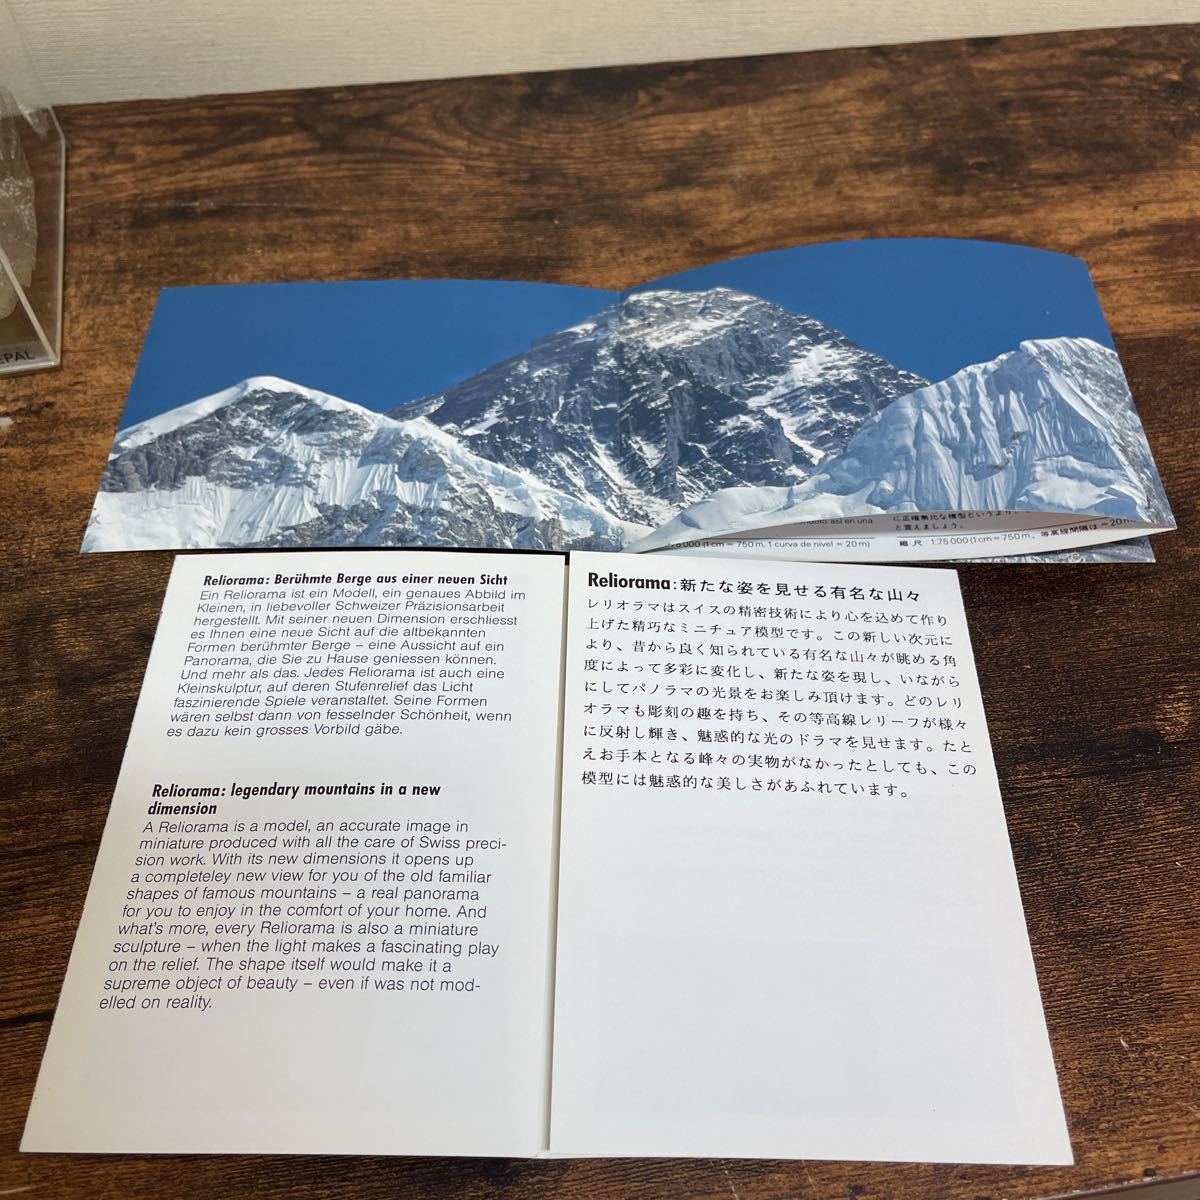 Reliorama rely o лама China ne жемчуг ebe rest Швейцария производства точный горы модель 1/75,000 шкала не использовался товар 